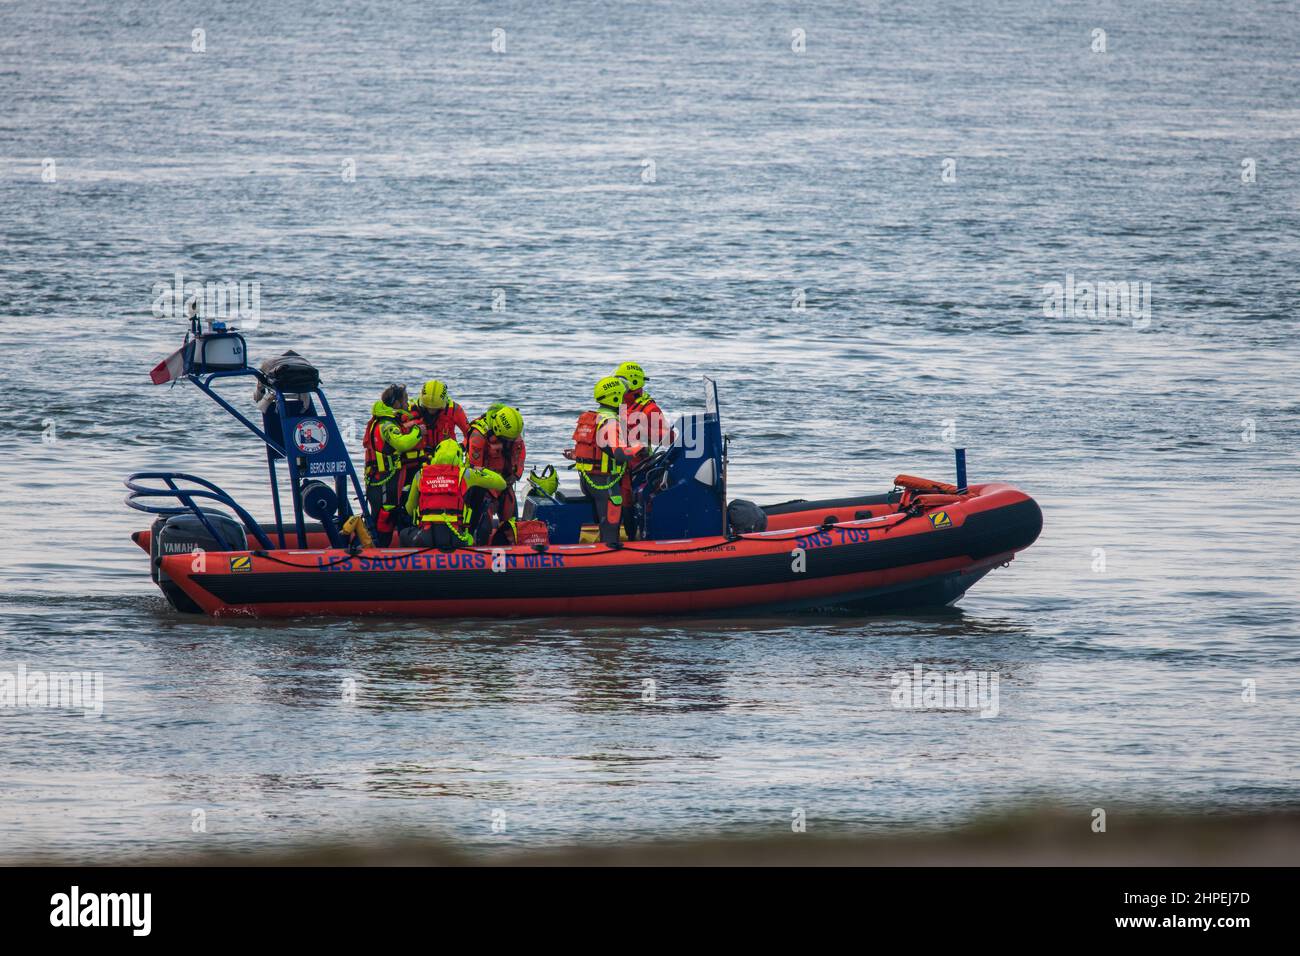 SNSM lifeguards at sea, France, Berck sur mer Stock Photo